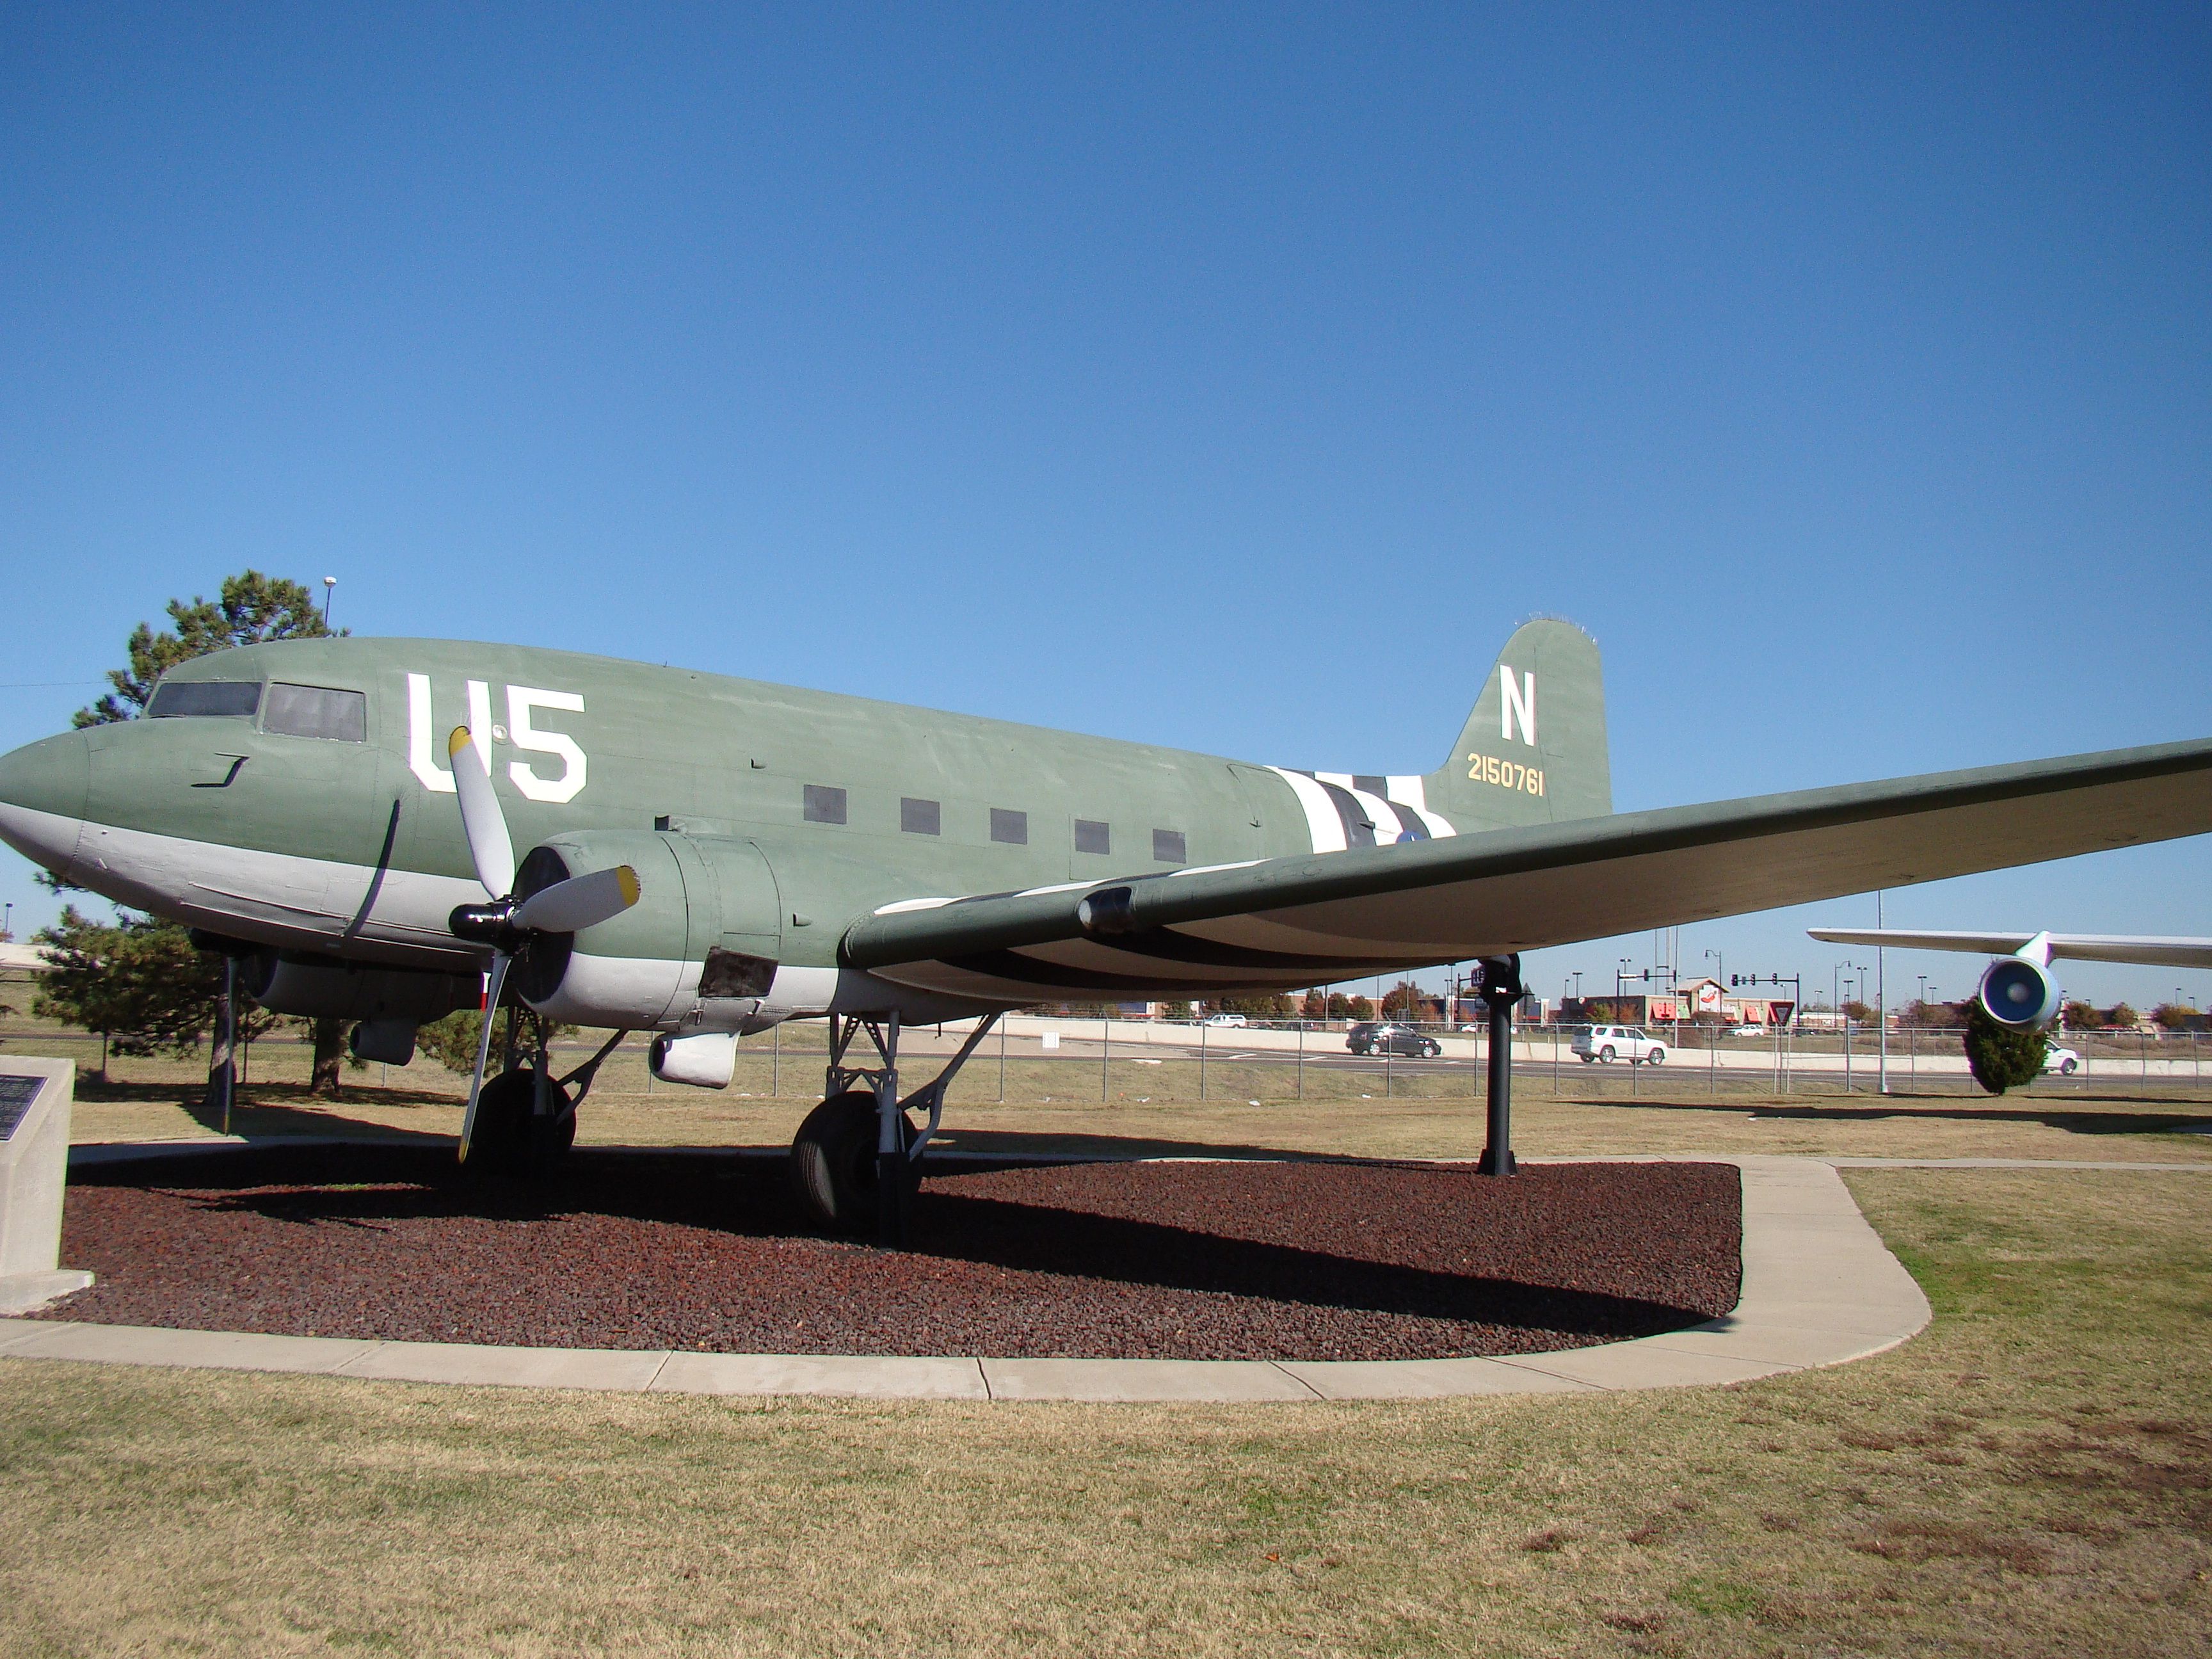 C-47 "Skytrain"